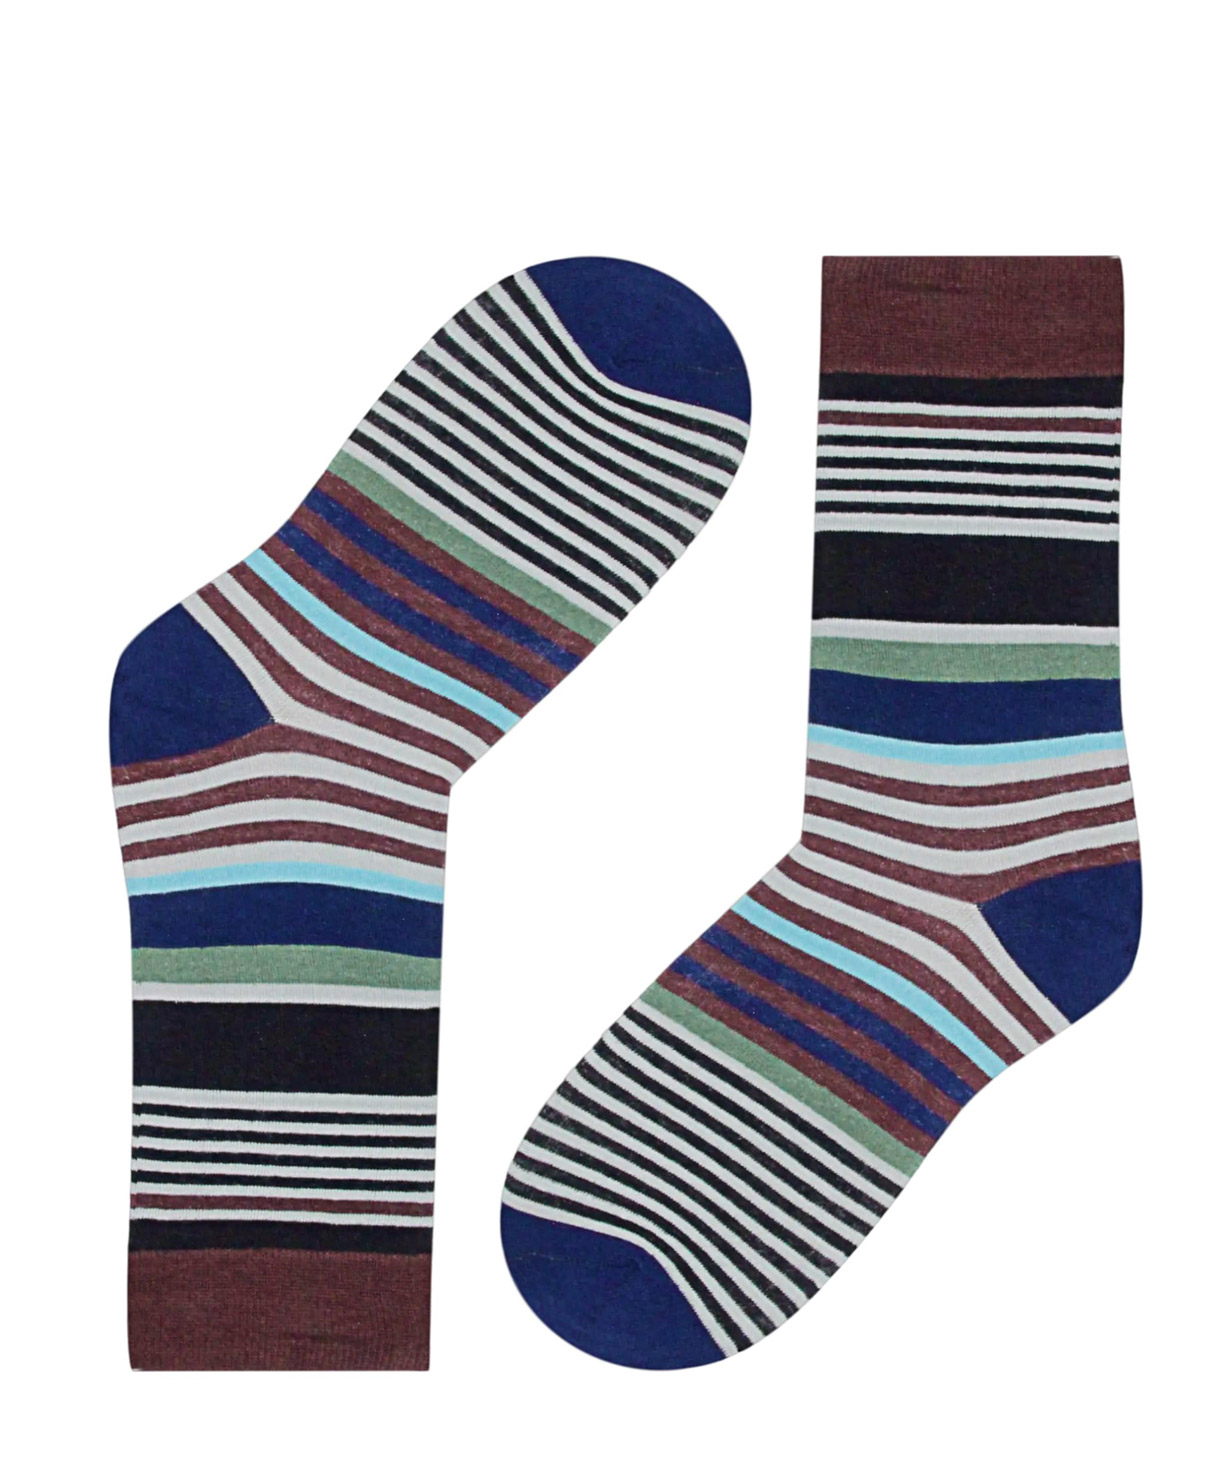 Socks `Zeal Socks` striped